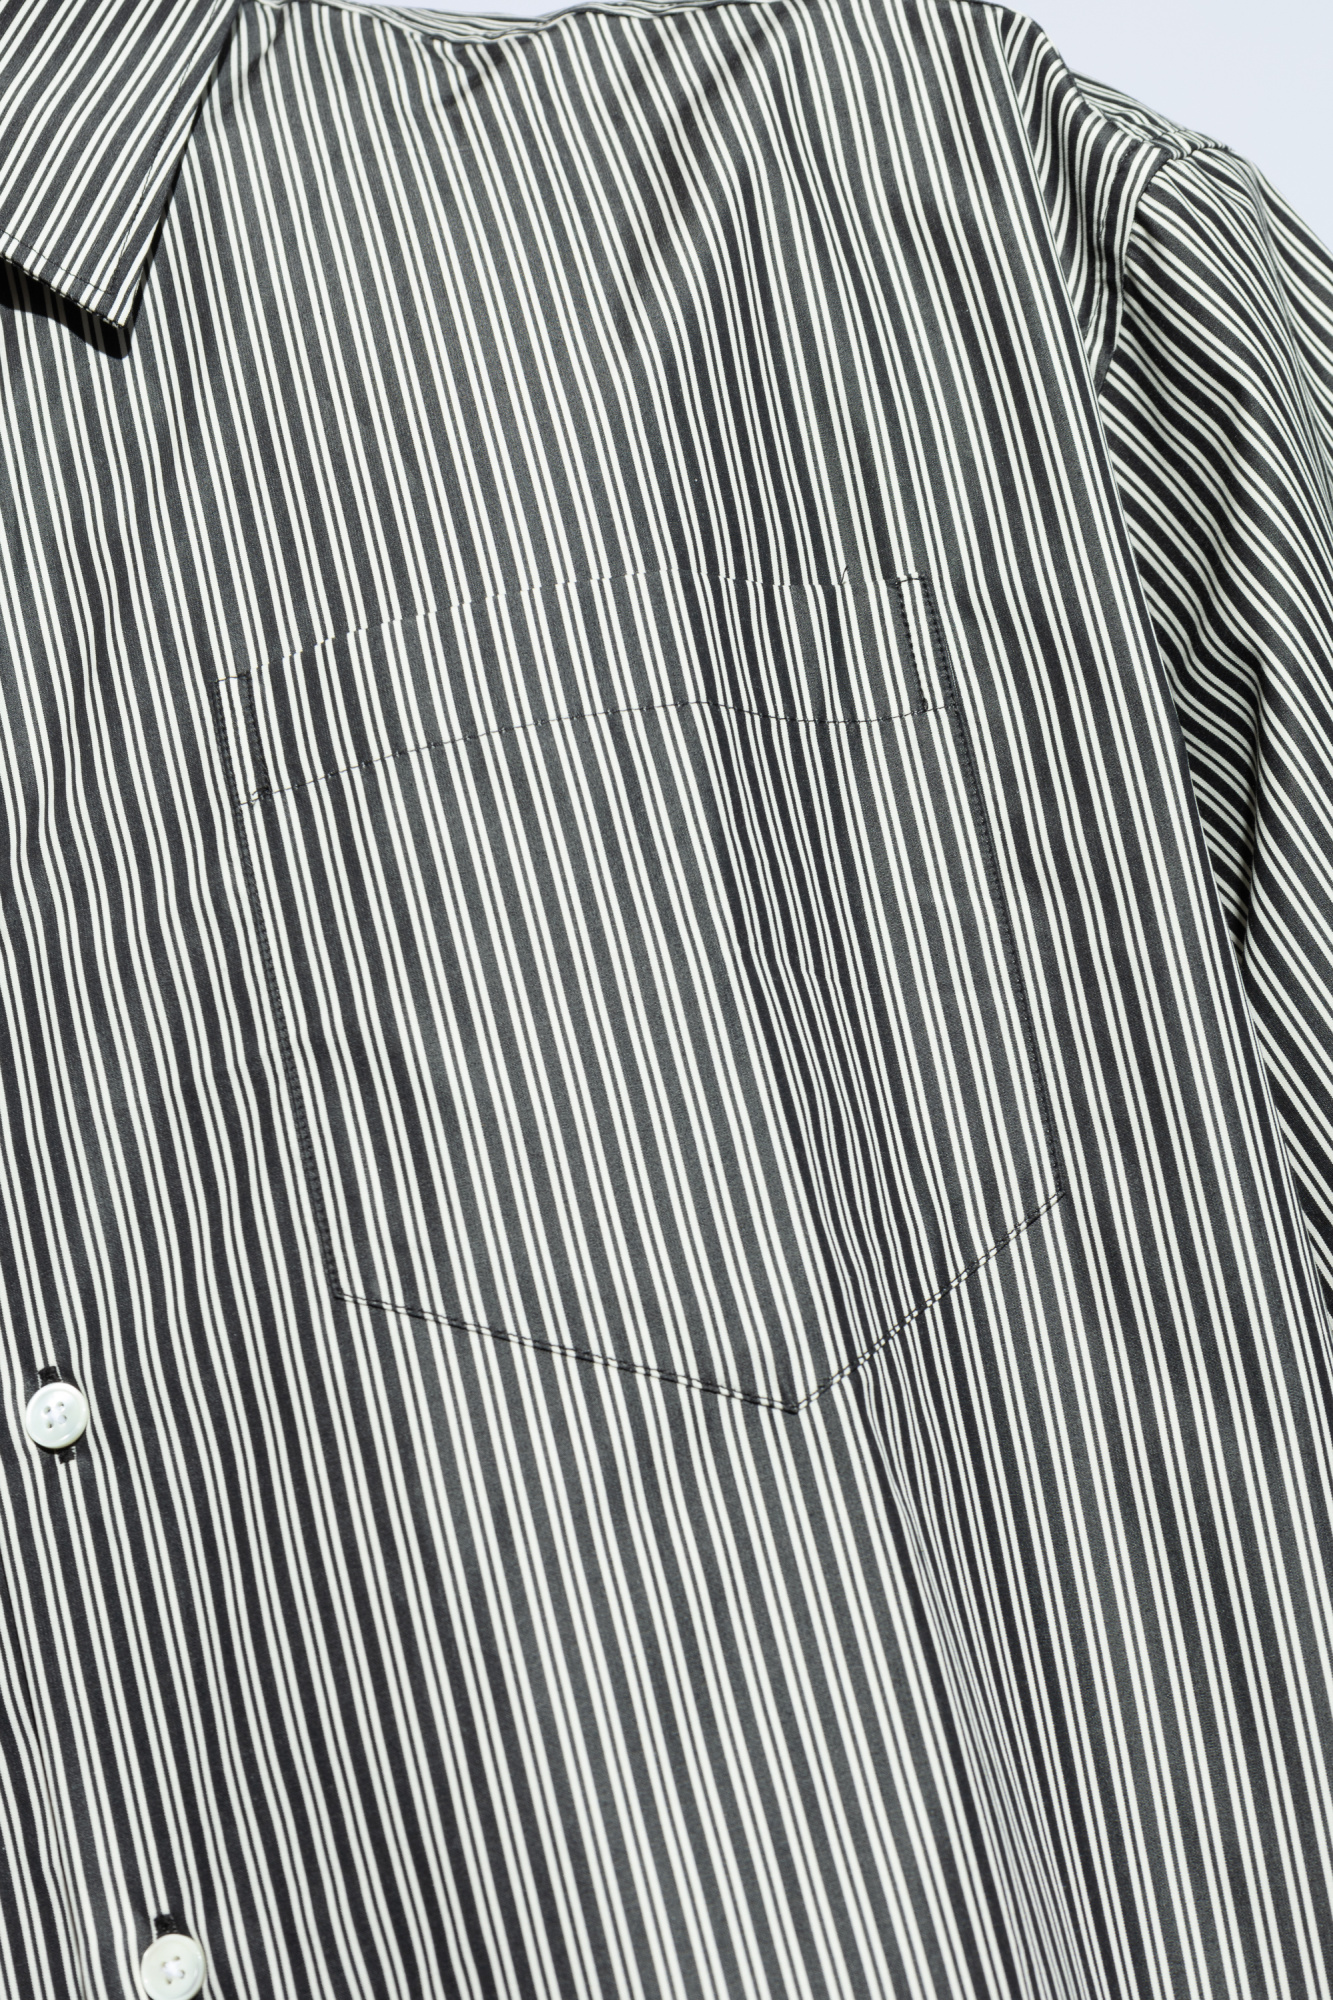 zebra appliqué polo shirt Striped pattern shirt